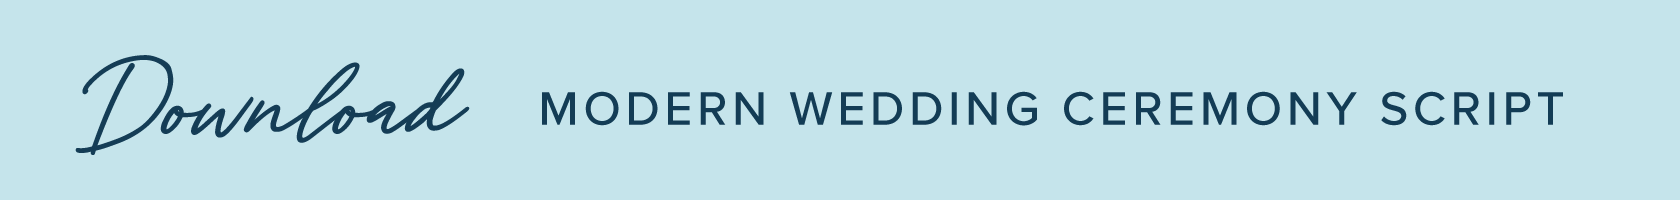 modern-wedding-ceremony-script-button